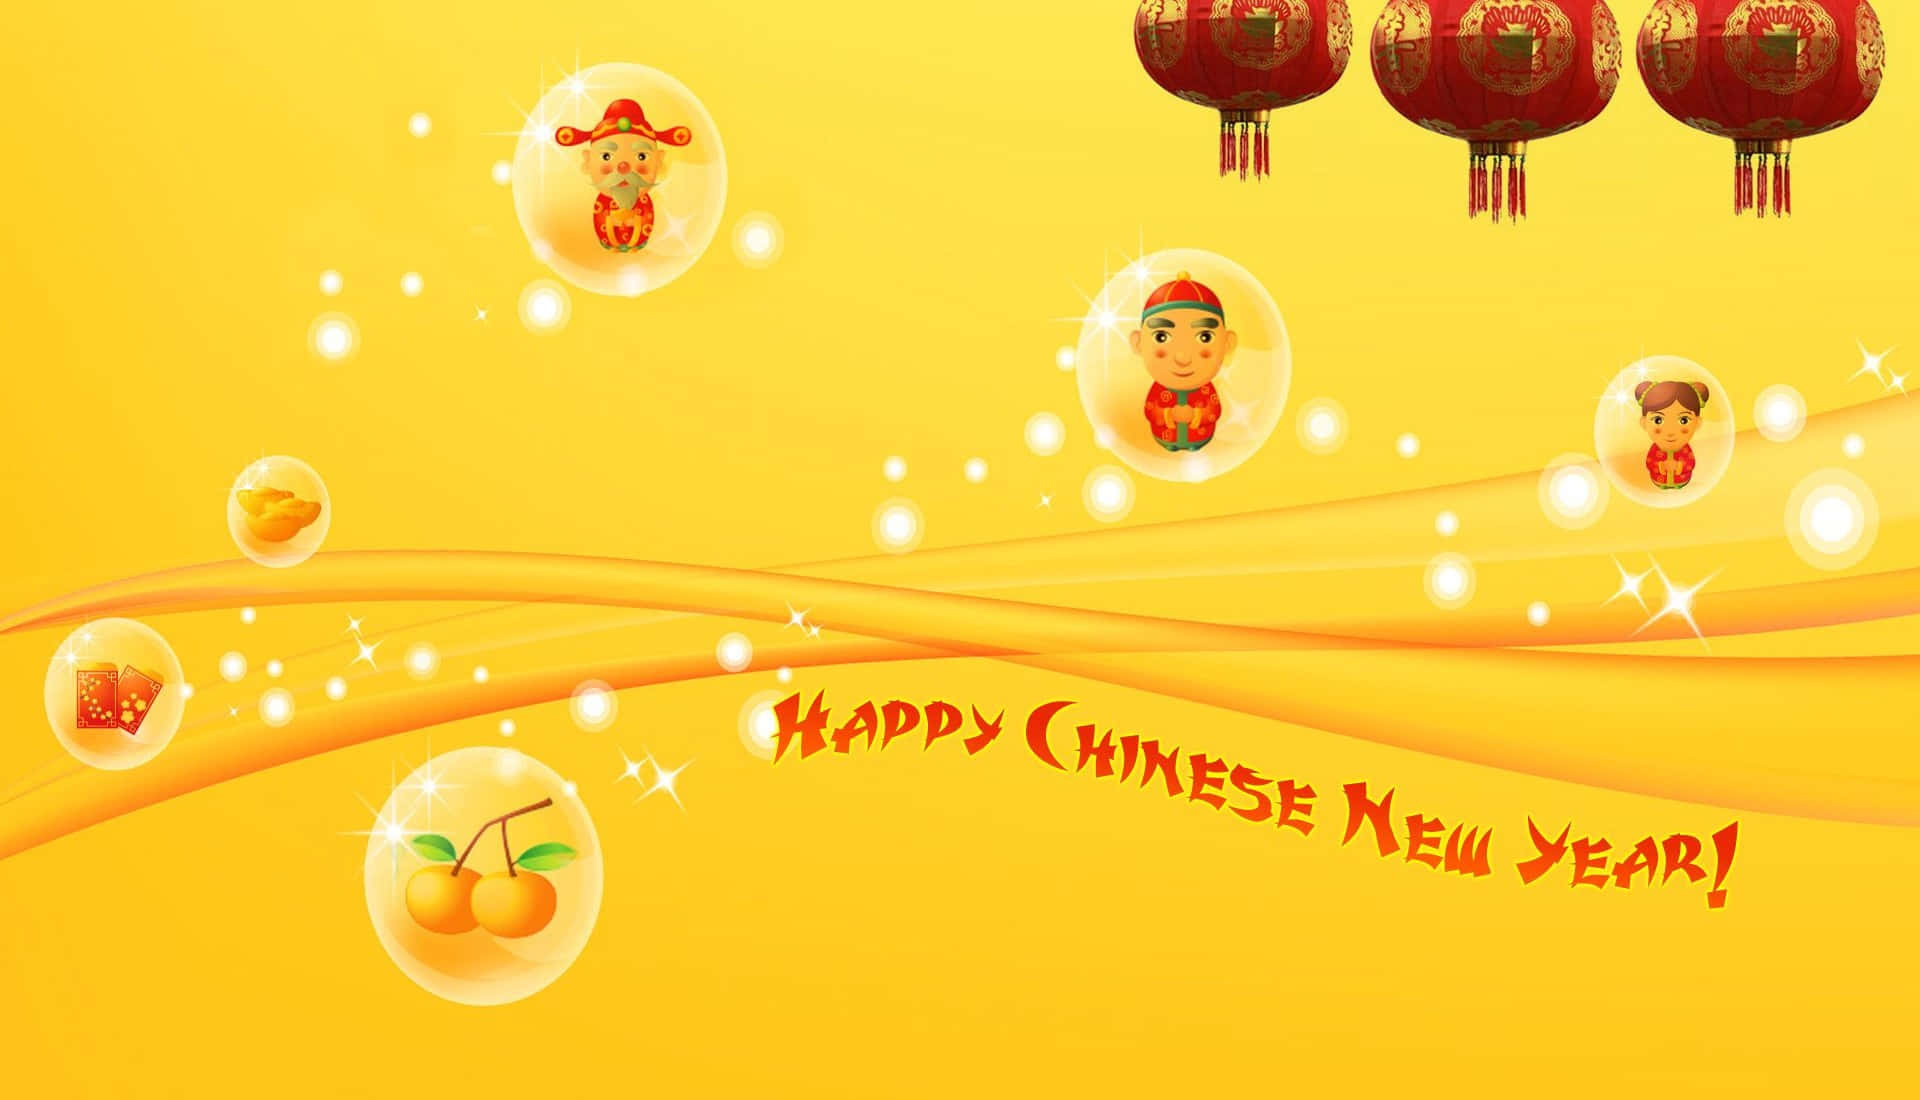 Feiernsie Das Chinesische Neujahr Auf Reiche Und Bunte Weise.